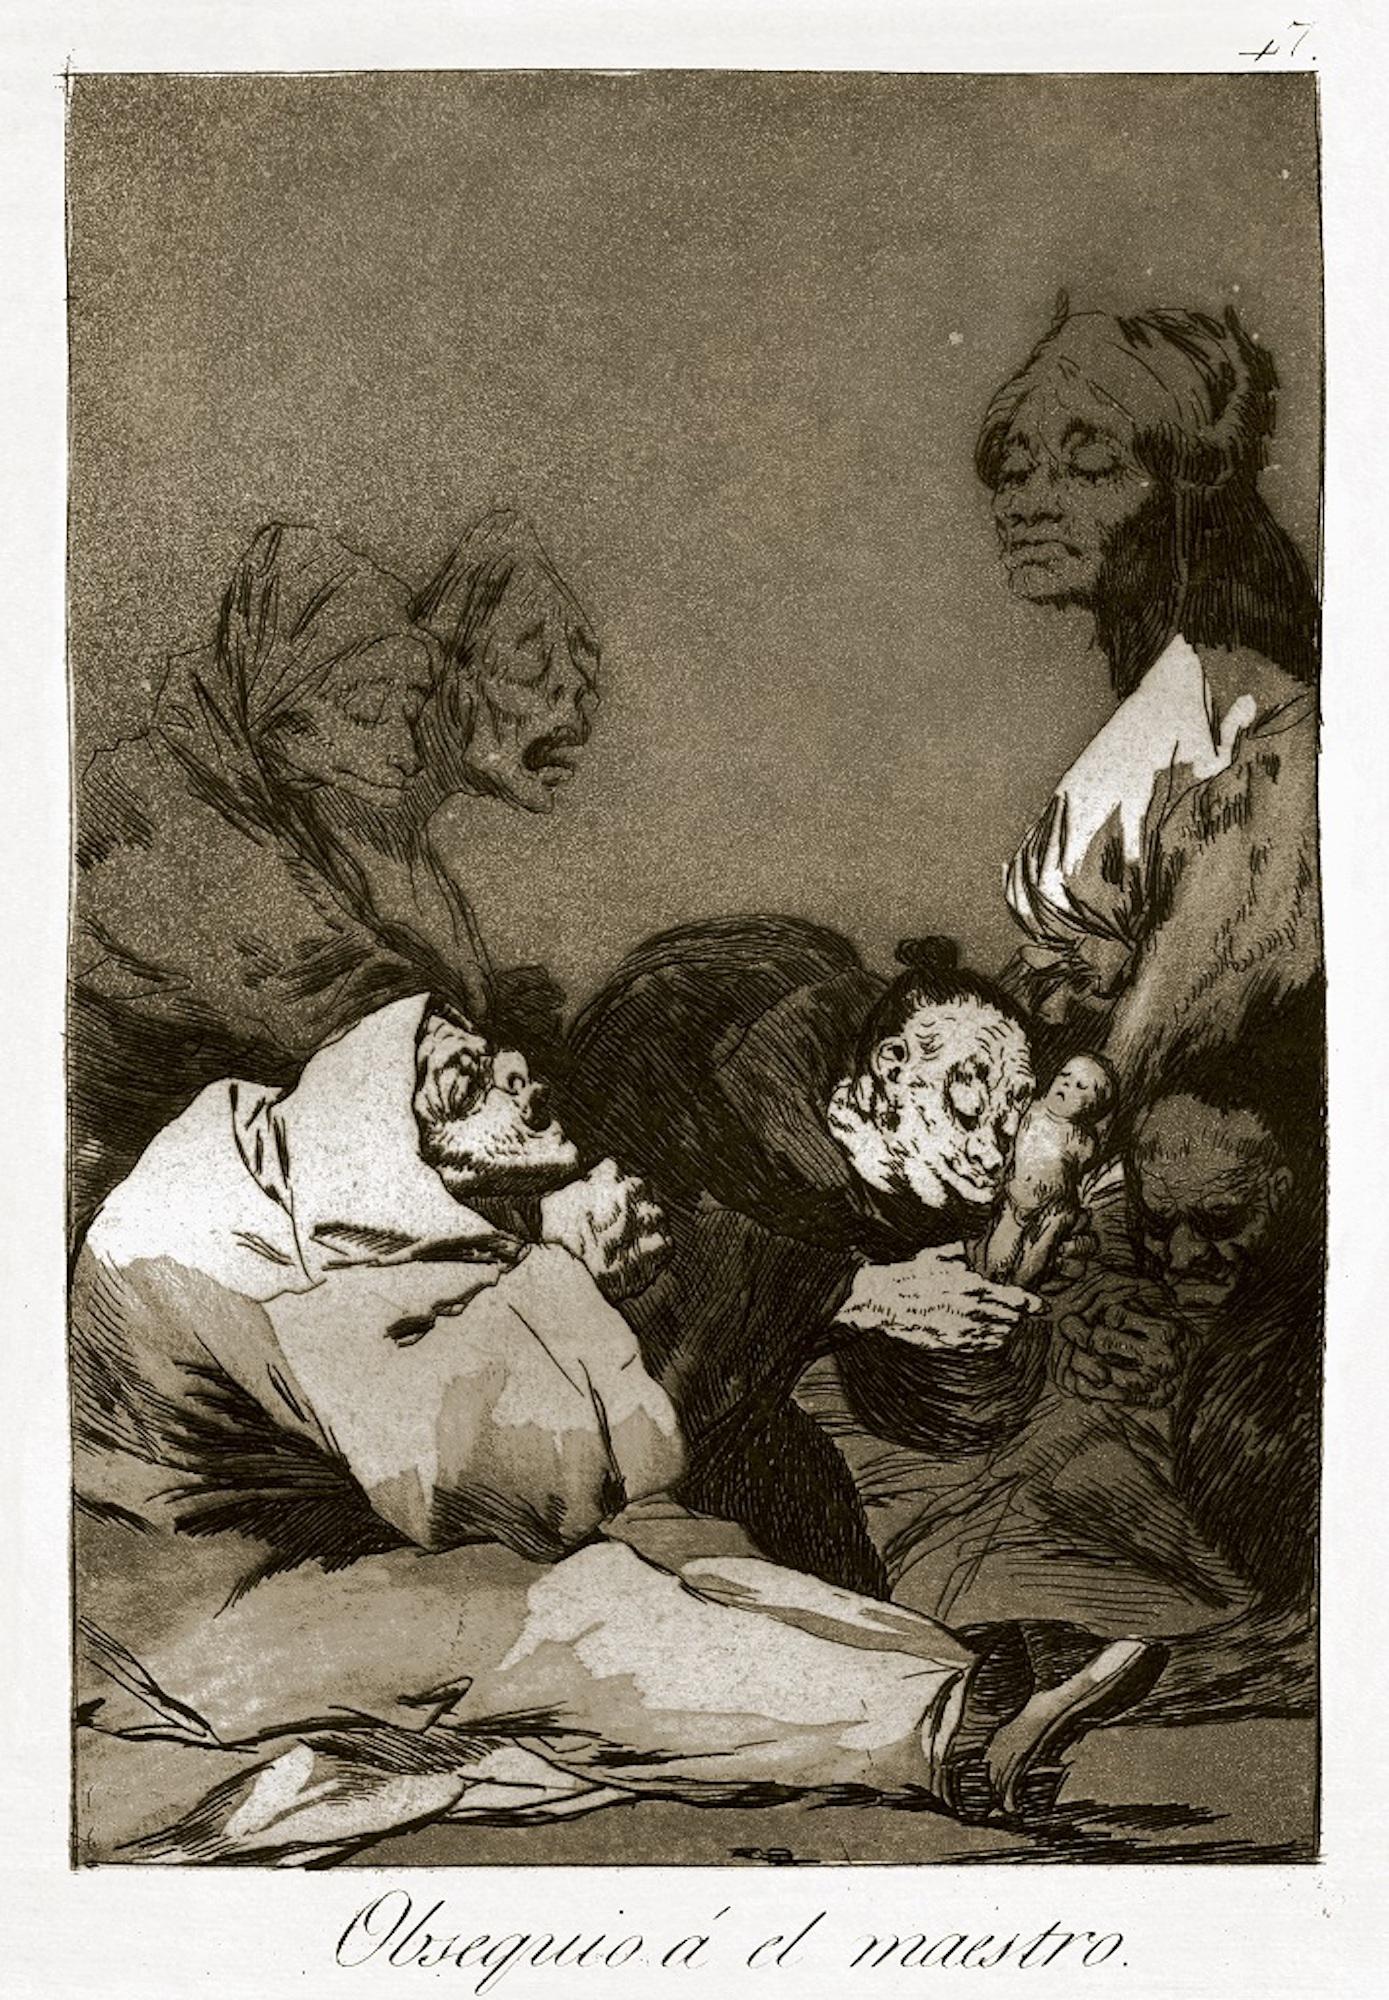 Obsequio a El Maestro  - Etching and Aquatint by Francisco Goya - 1869